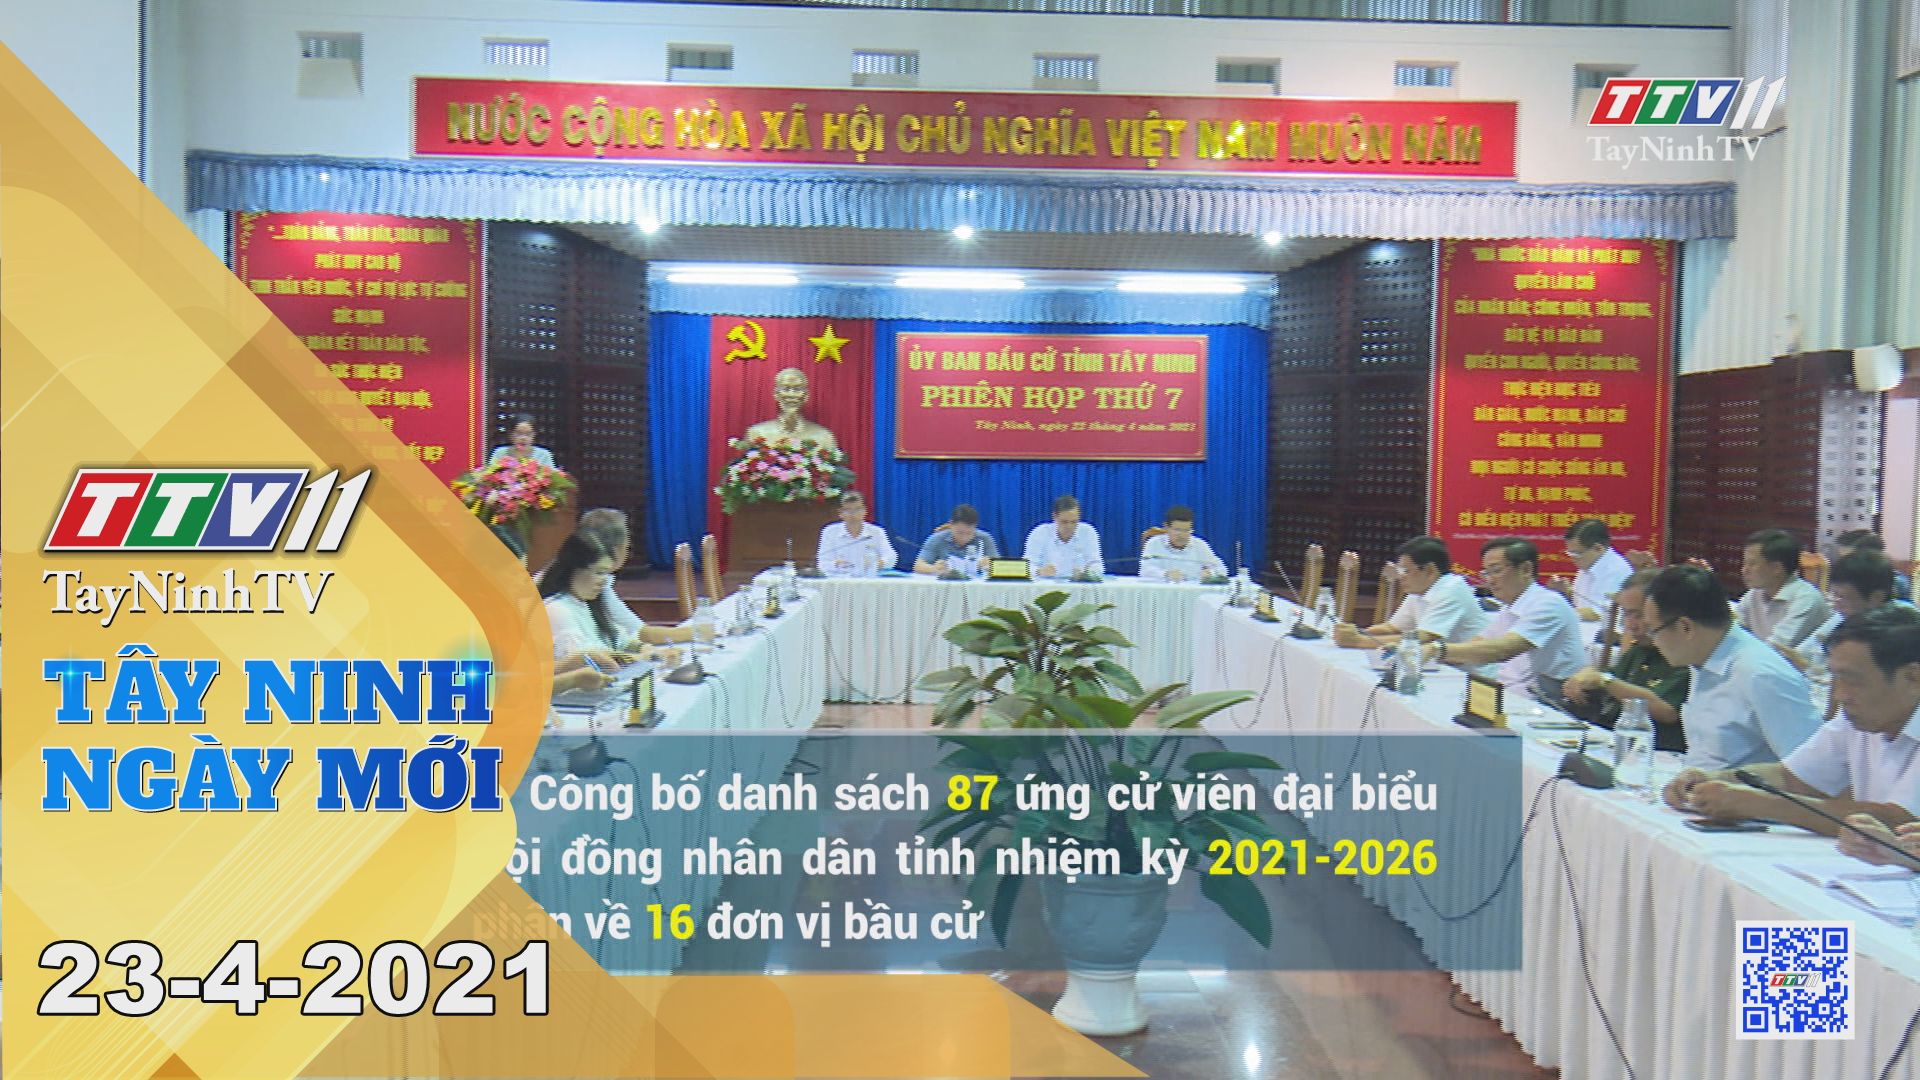 Tây Ninh Ngày Mới 23-4-2021 | Tin tức hôm nay | TayNinhTV